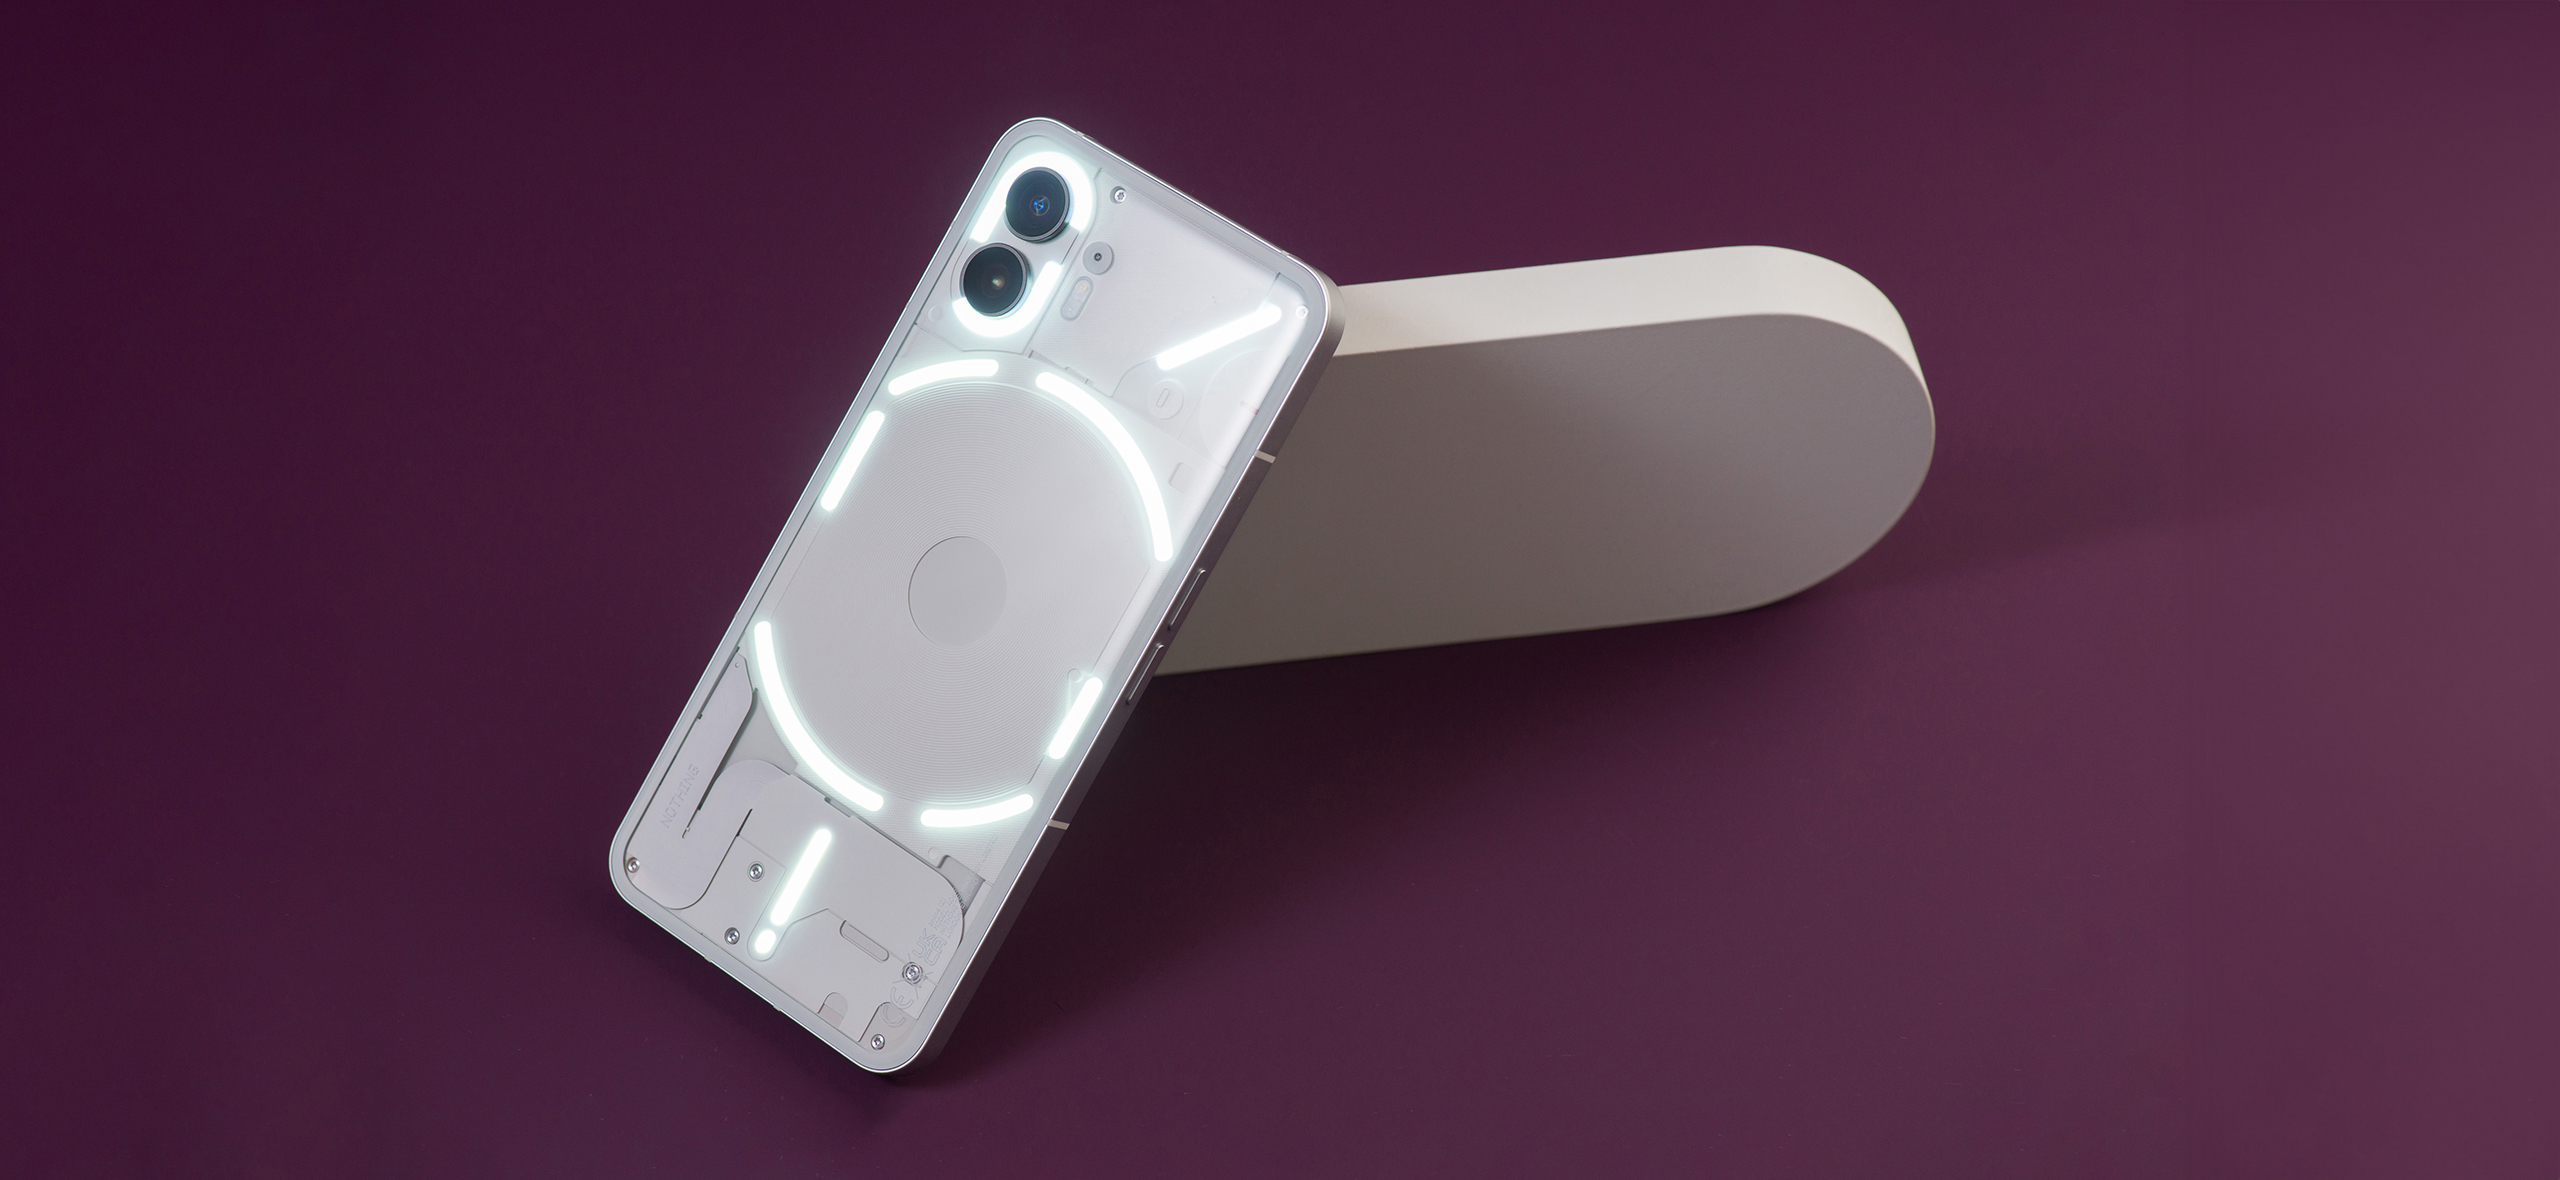 Nothing Phone (2): обзор смартфона с прозрачной крышкой и необычной подсветкой